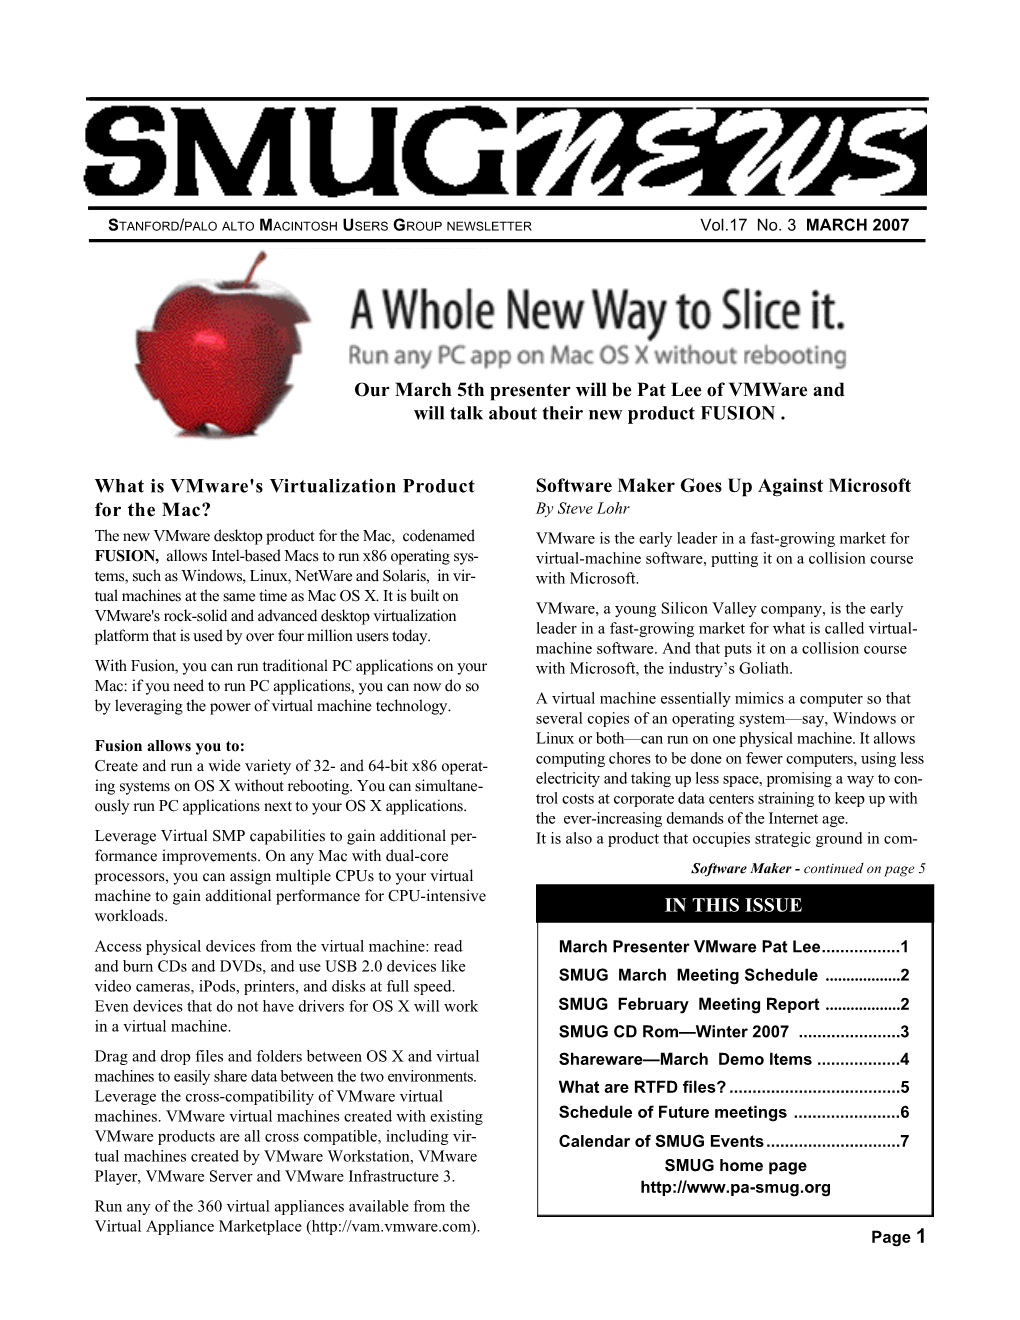 SMUG March 2007 Newsletter